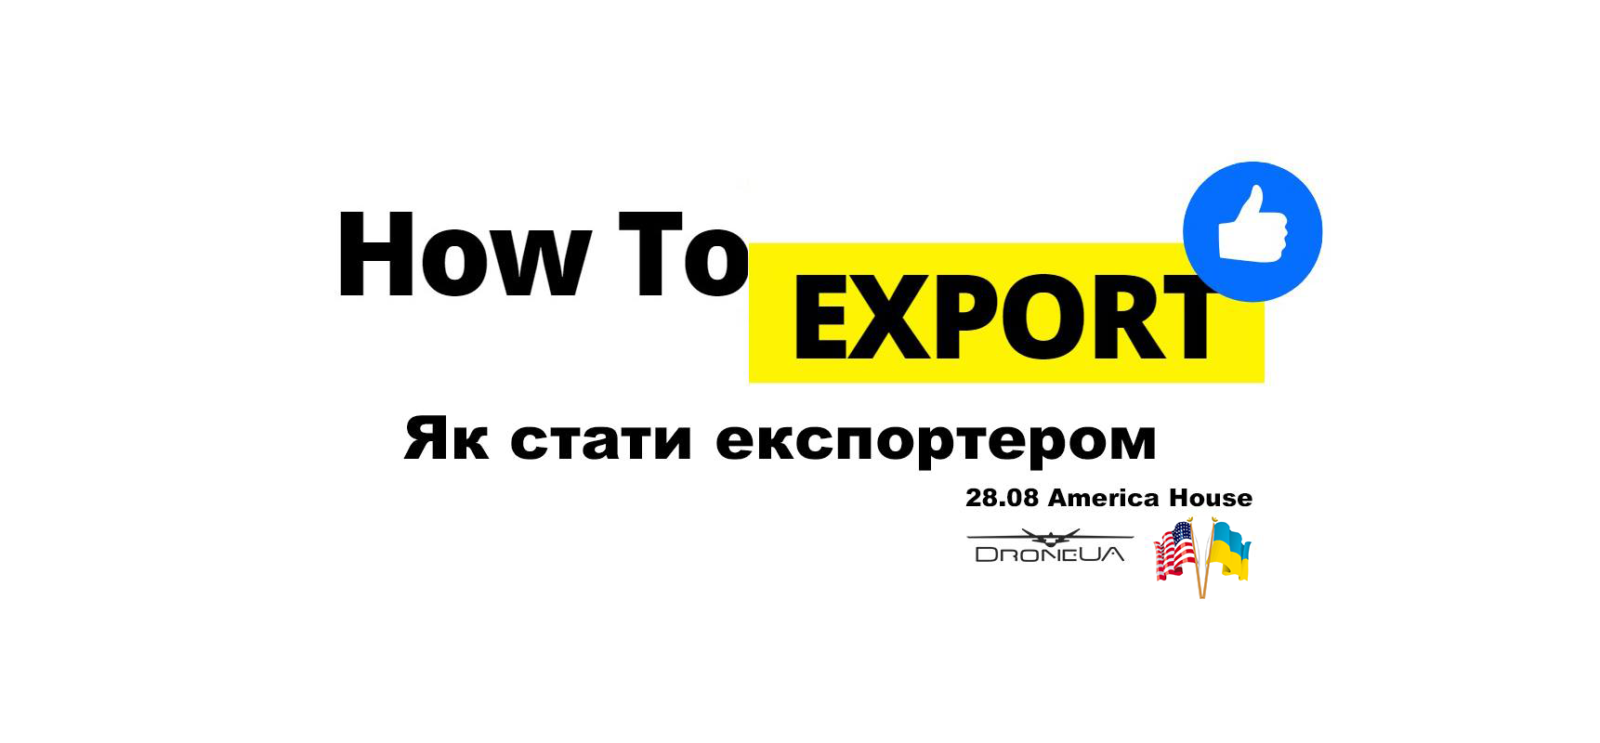 Програма форуму How to Export/Як стати експортером